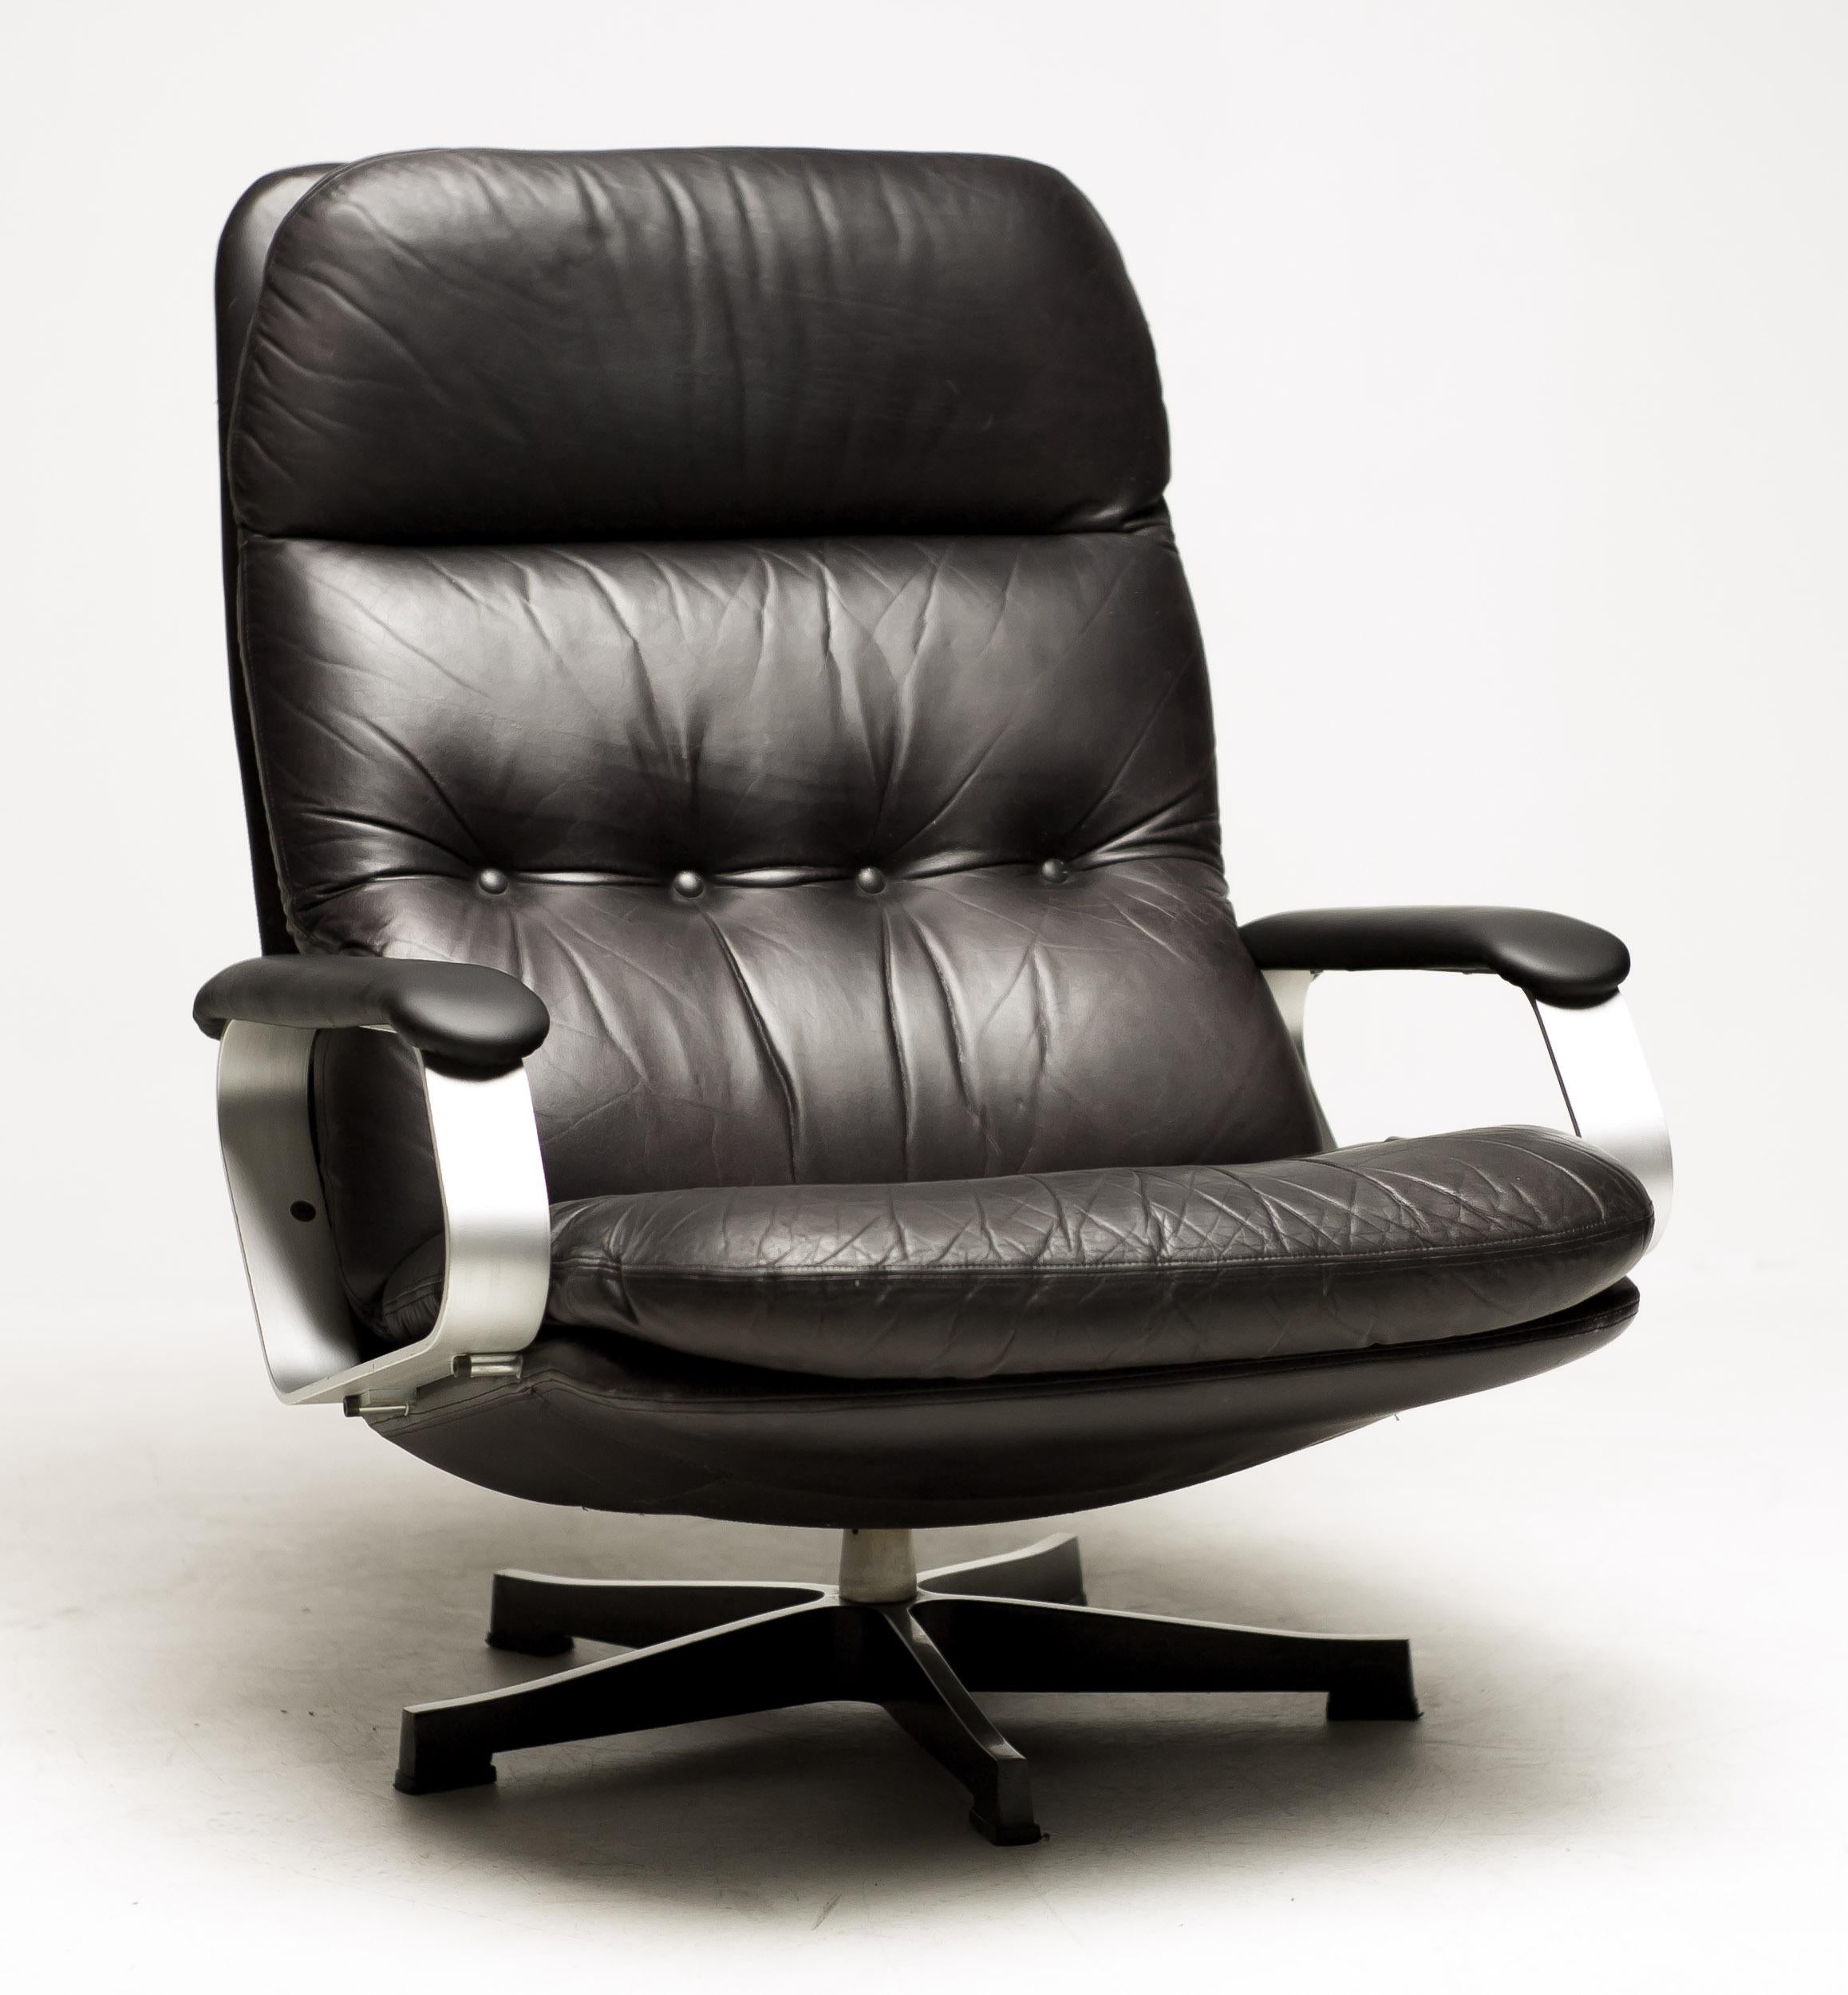 Chaise longue en cuir noir des années 1960 très impressionnante et confortable.
Base pivotante en aluminium et accoudoirs en aluminium recouverts de cuir noir.
La chaise longue Eames a la réputation d'être confortable, mais cette chaise est vraiment